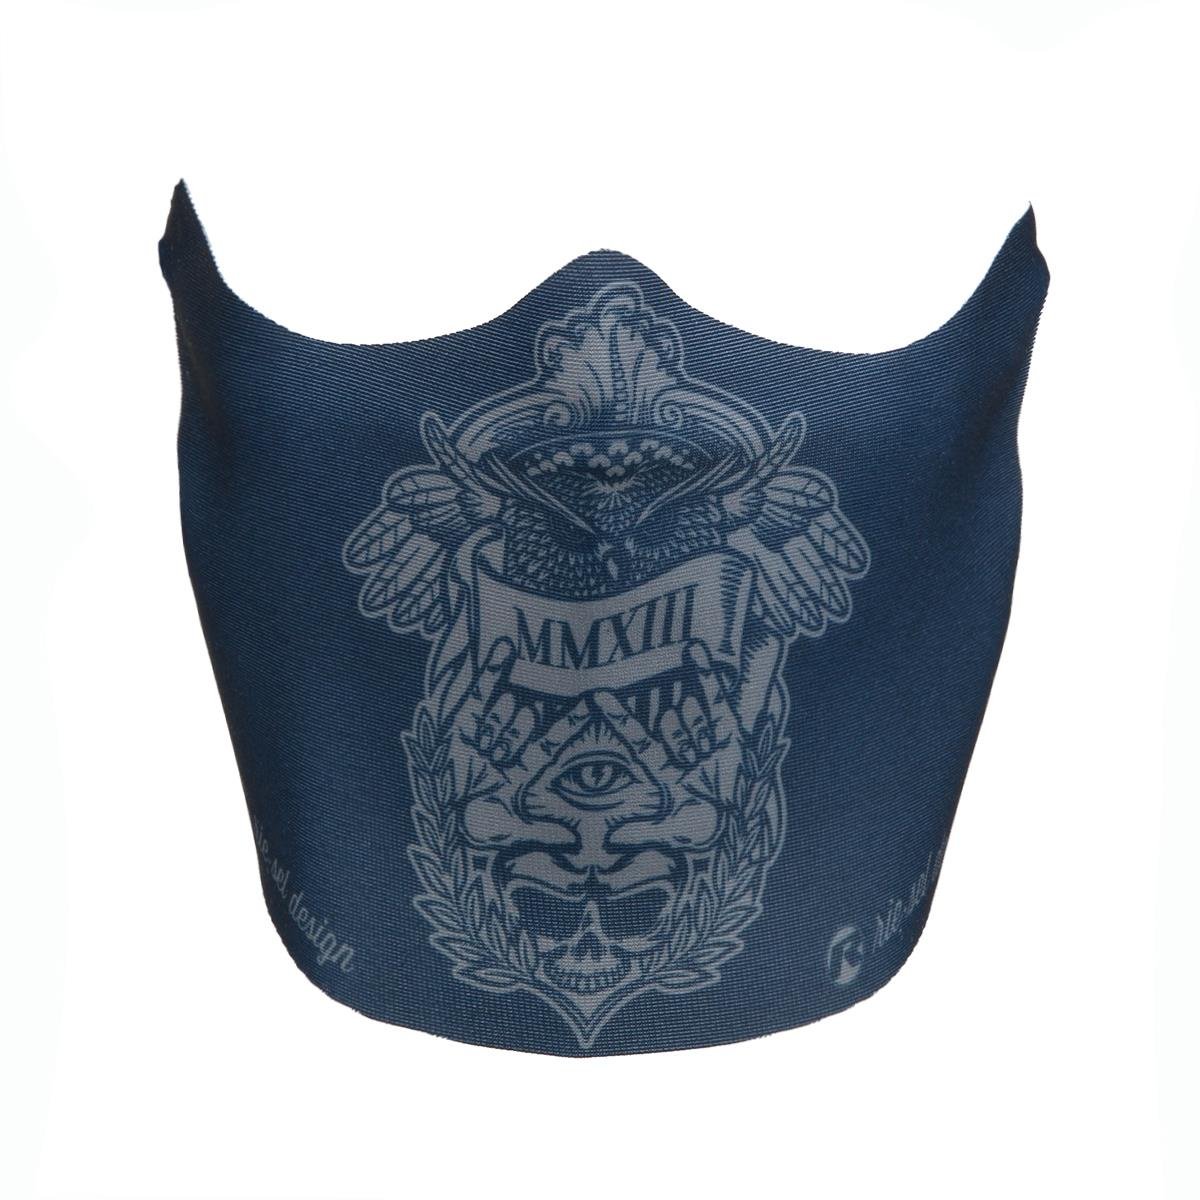 Riesel Design Mascherina  Illuminati Navy Blue